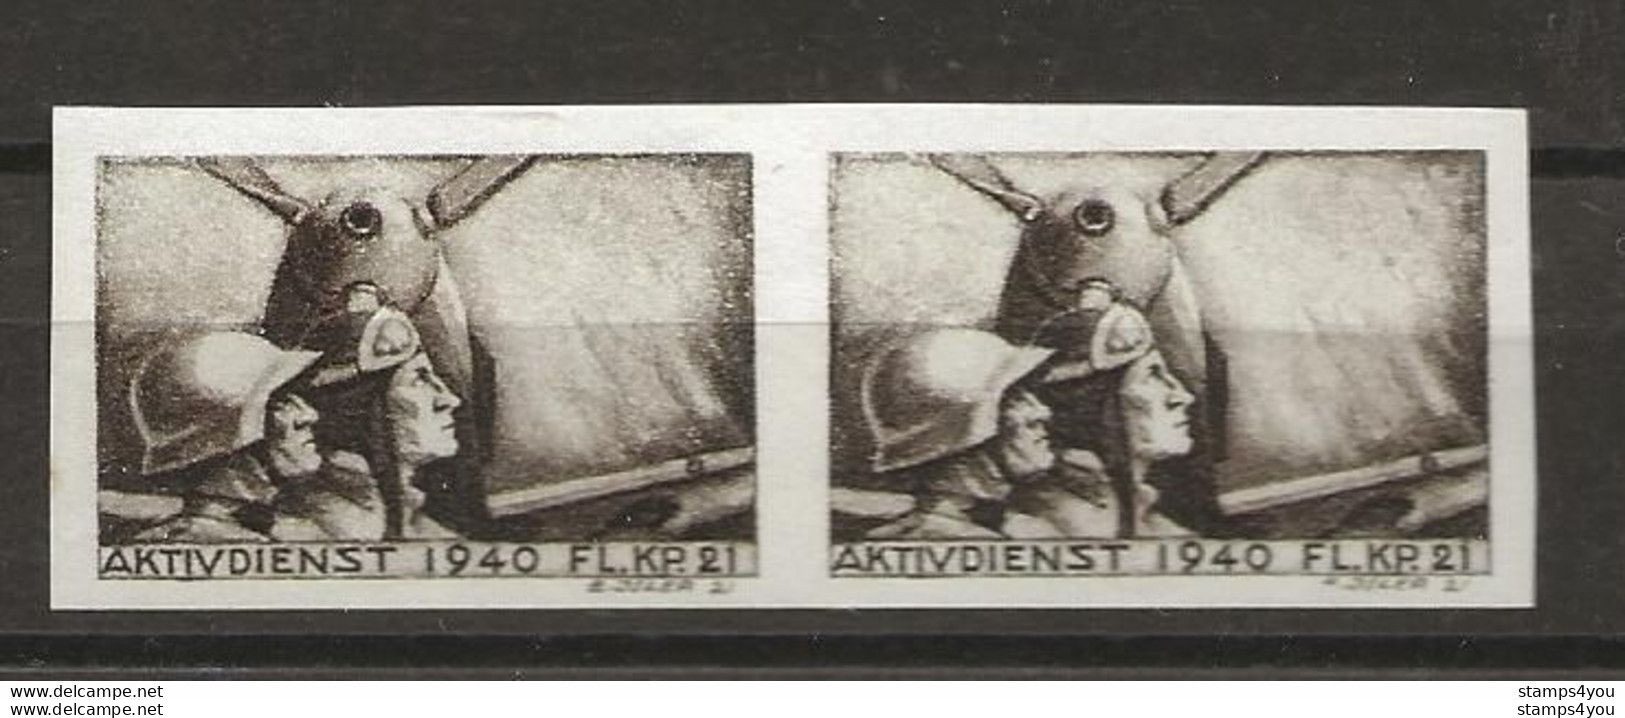 406 - 5b - Paire Timbres Non-dentelés Neufs  "Aktivdienst 1940 Fl. Kp. 21" - Etichette